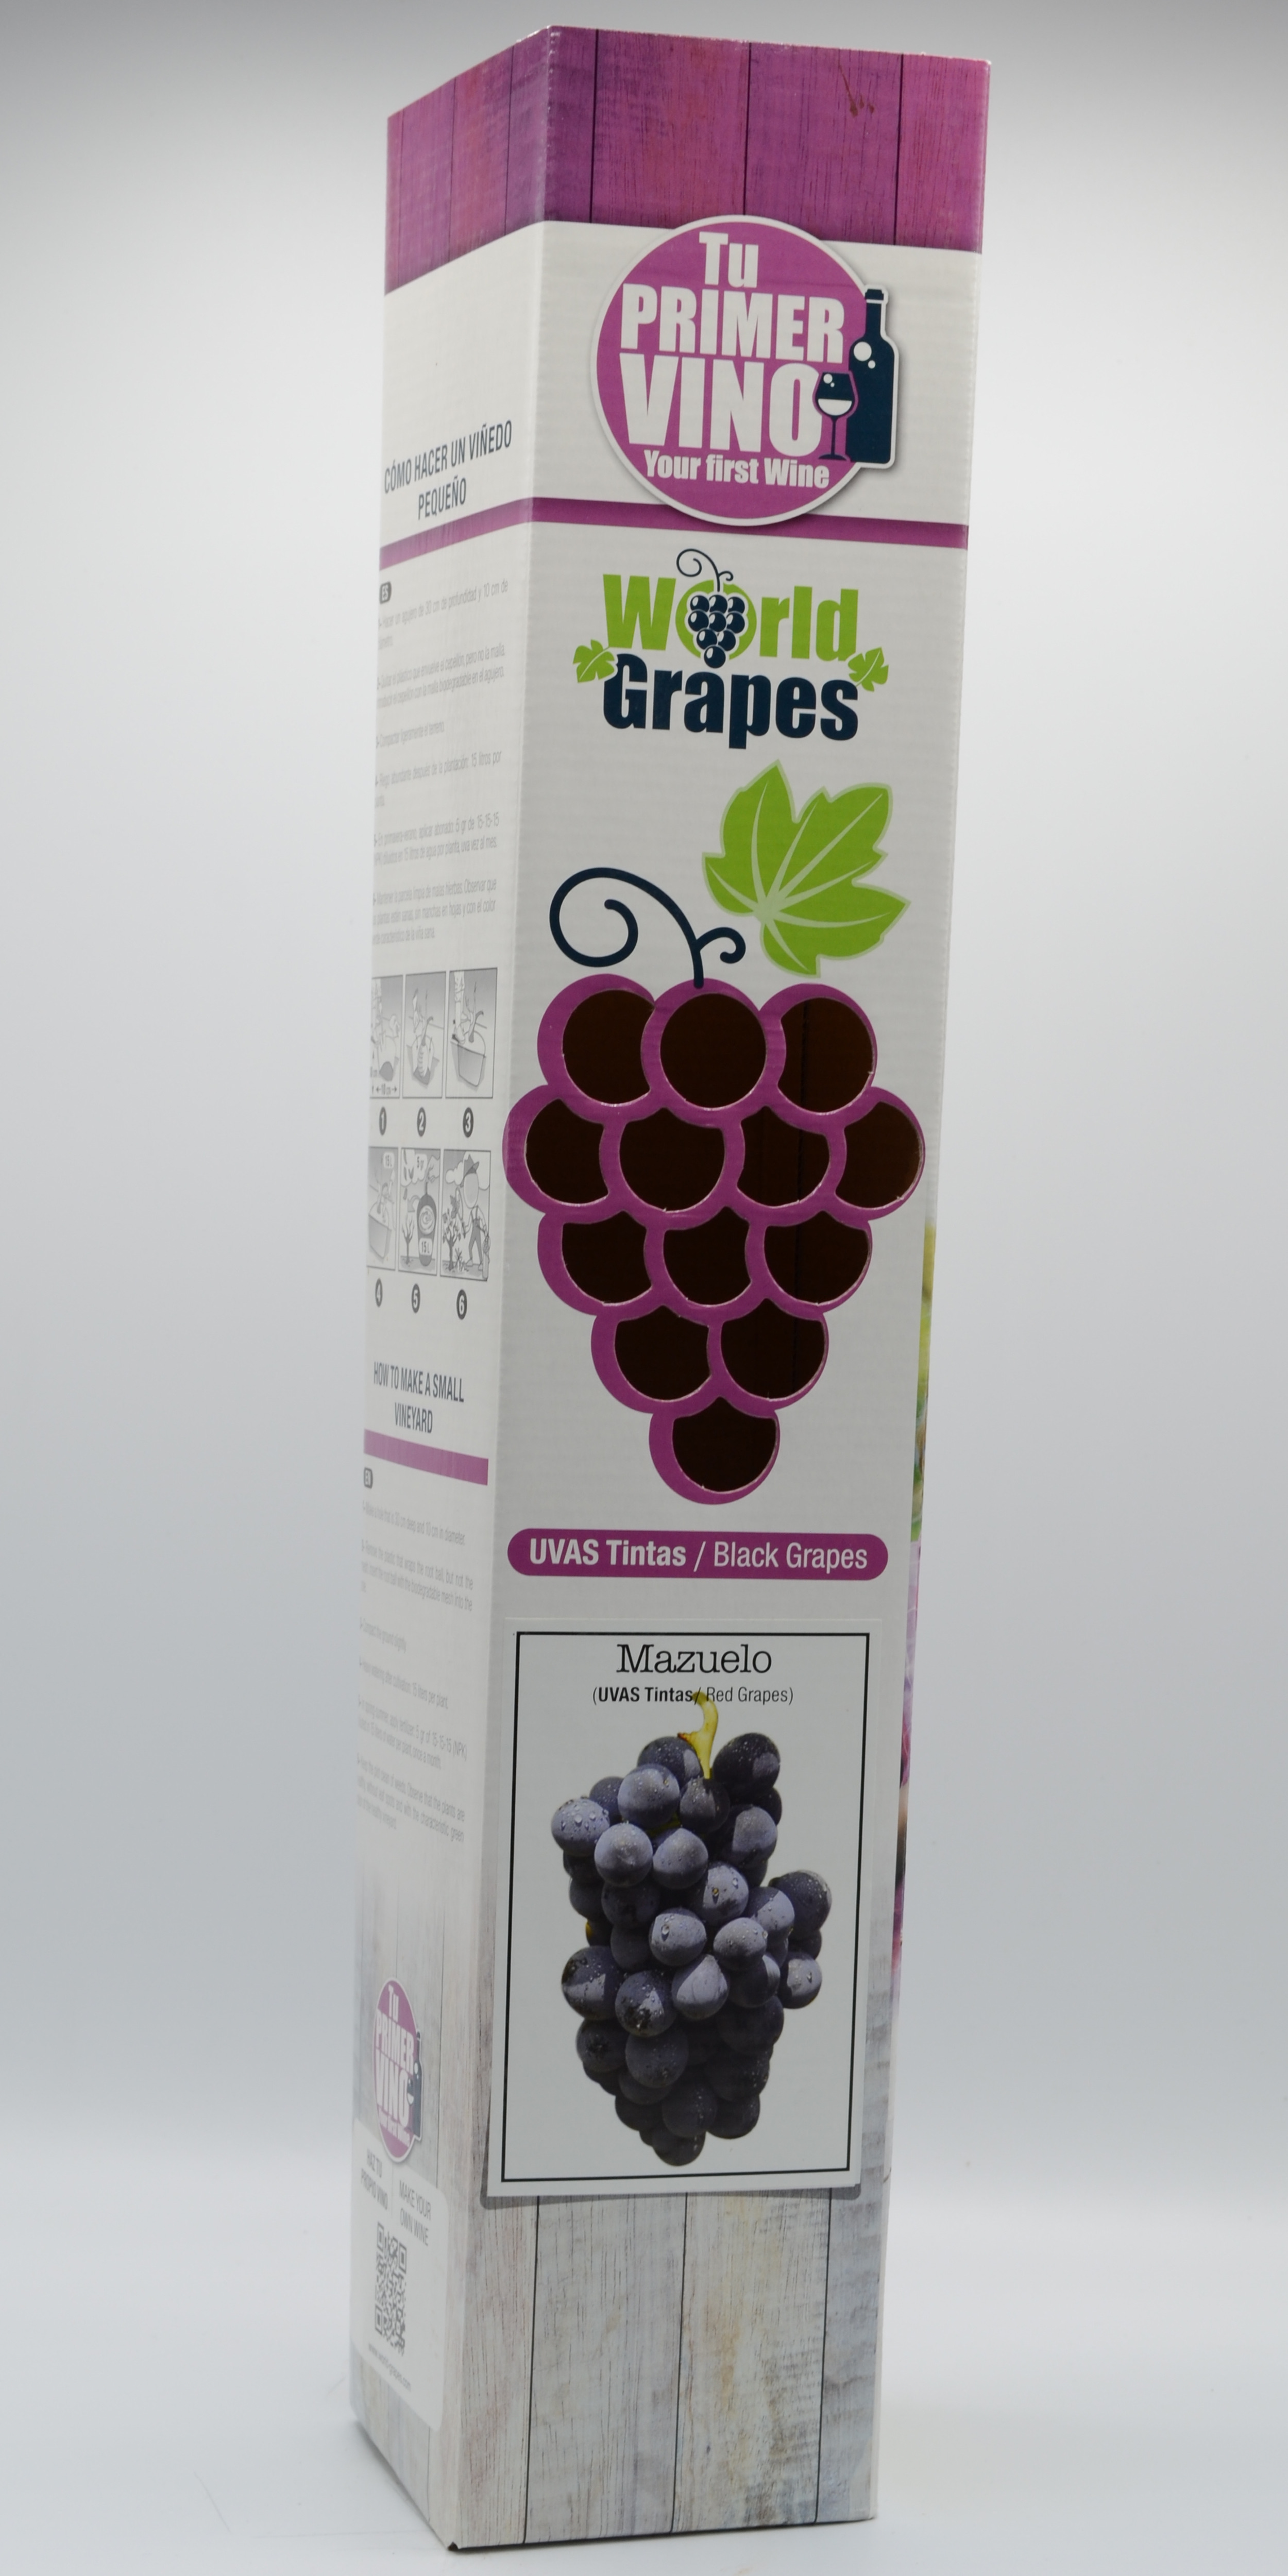 World-Grapes Carignan